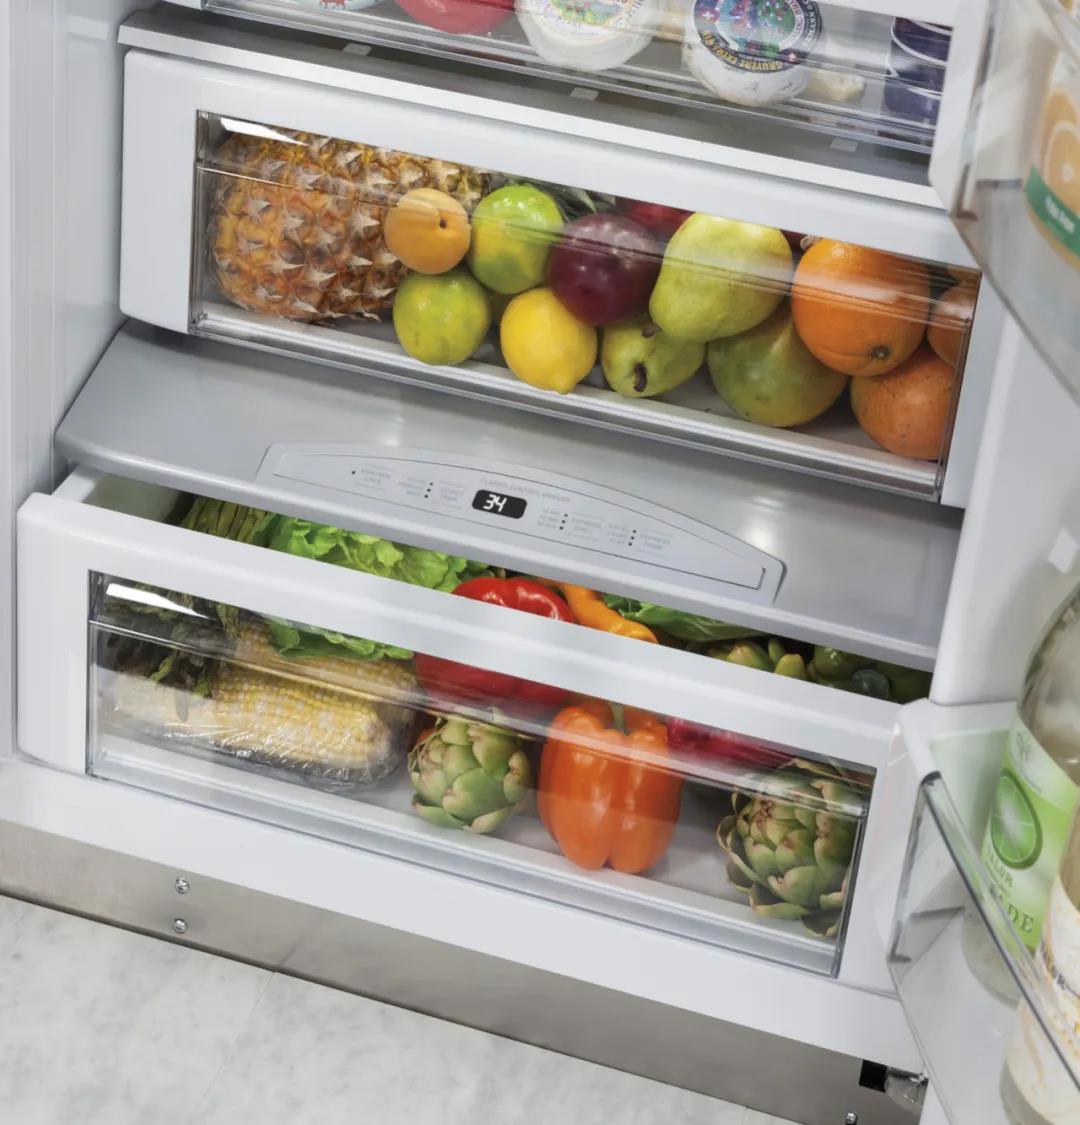 “囤货”式购物,需要一款超级大的GE冰箱来进行储藏和分类